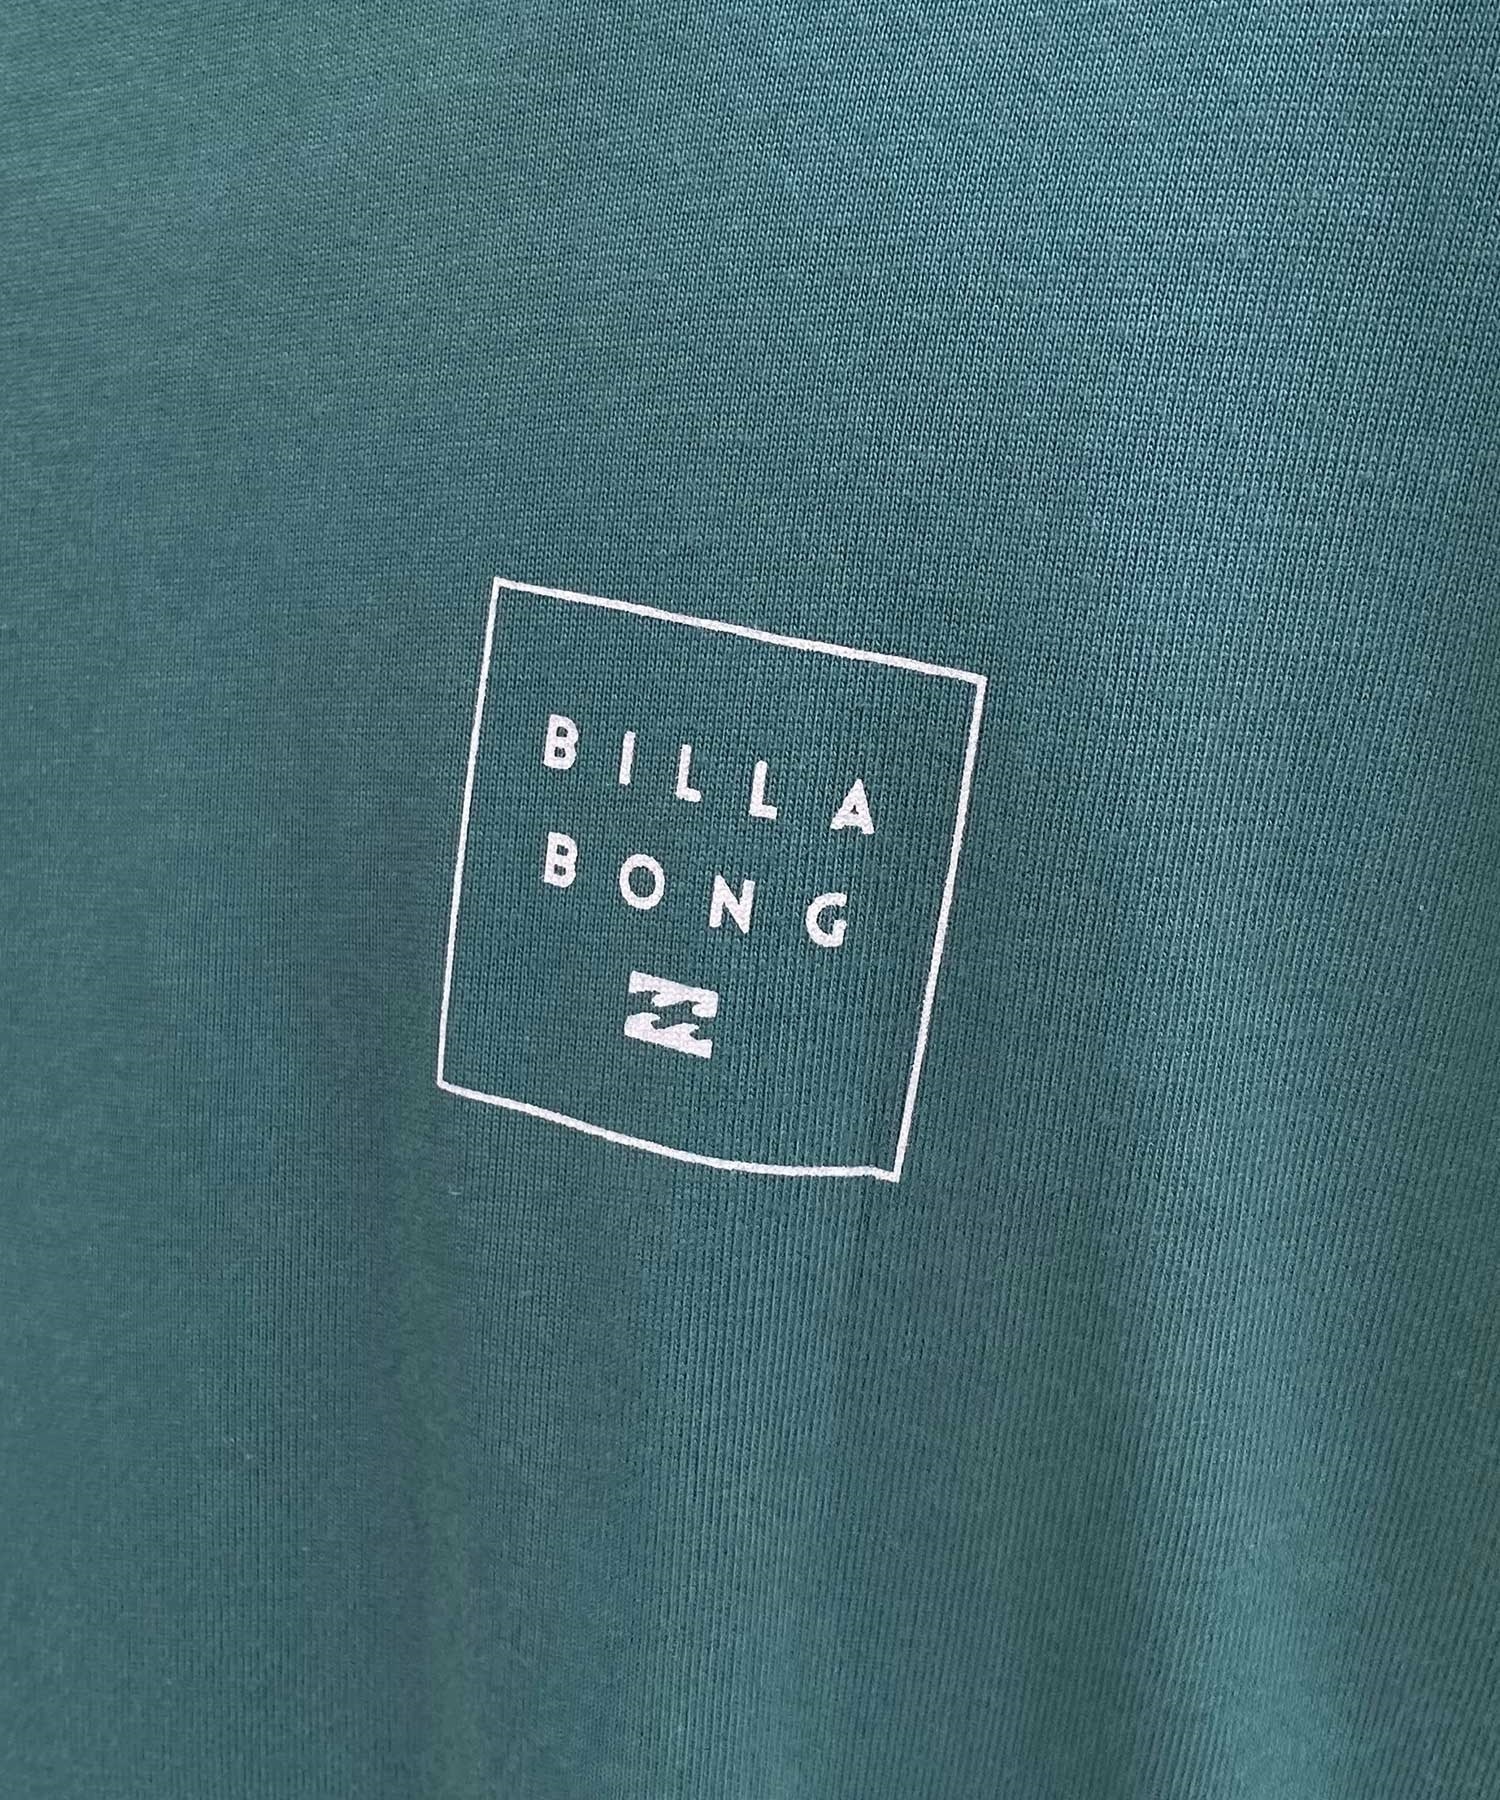 BILLABONG ビラボン BE011-054 メンズ 長袖 Tシャツ ヘビーウェイトロンT バックプリント ロゴ ロンT(BLA-M)